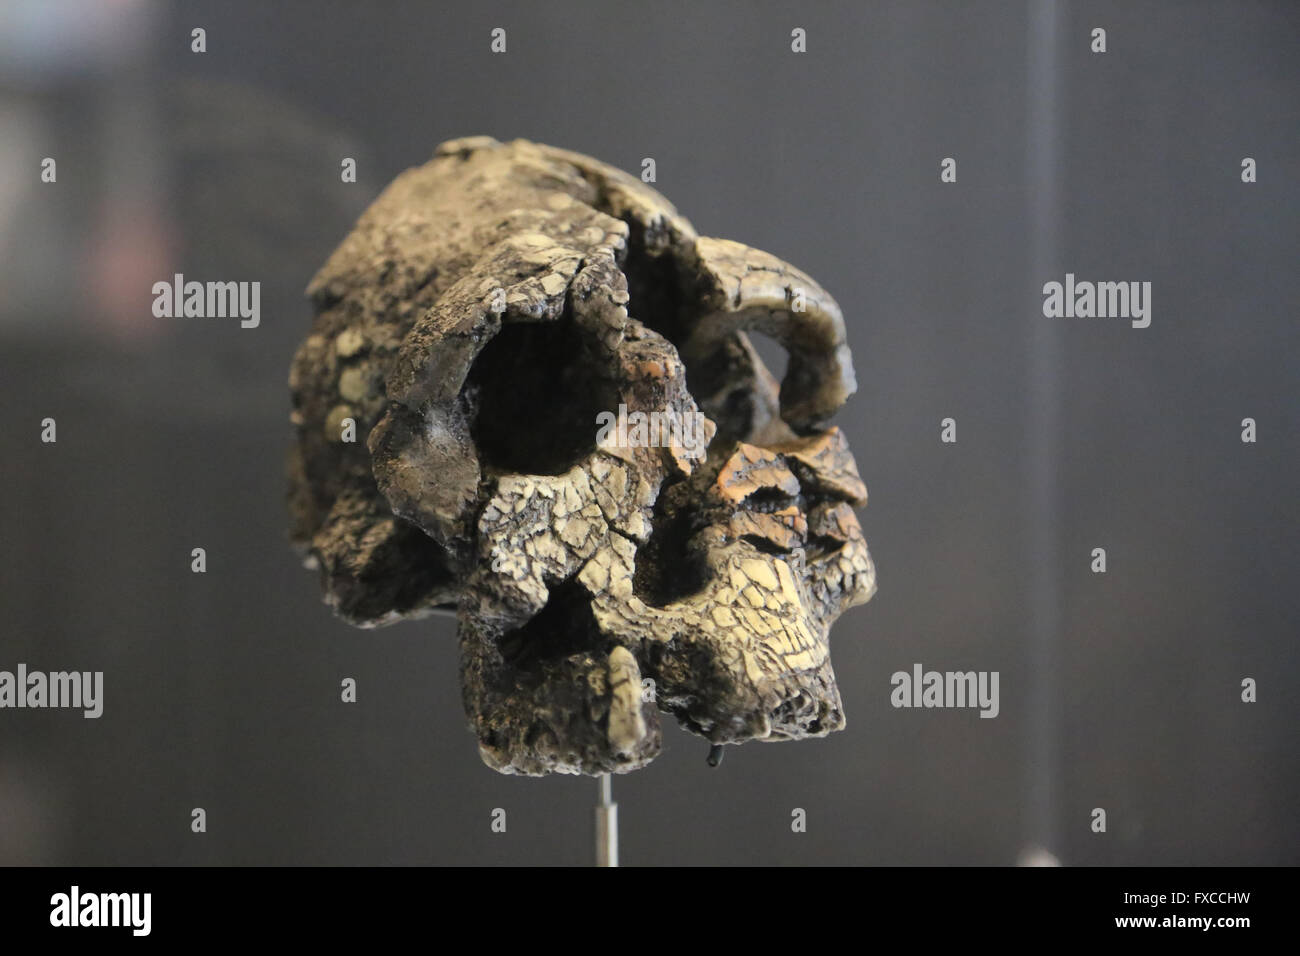 Kenyanthropus Platyops. Kenia. Turkana-See. Afrika. -vor 3,5 Millionen Jahren. Pliozän. Größe des Gehirns: 350 cm3. Stockfoto